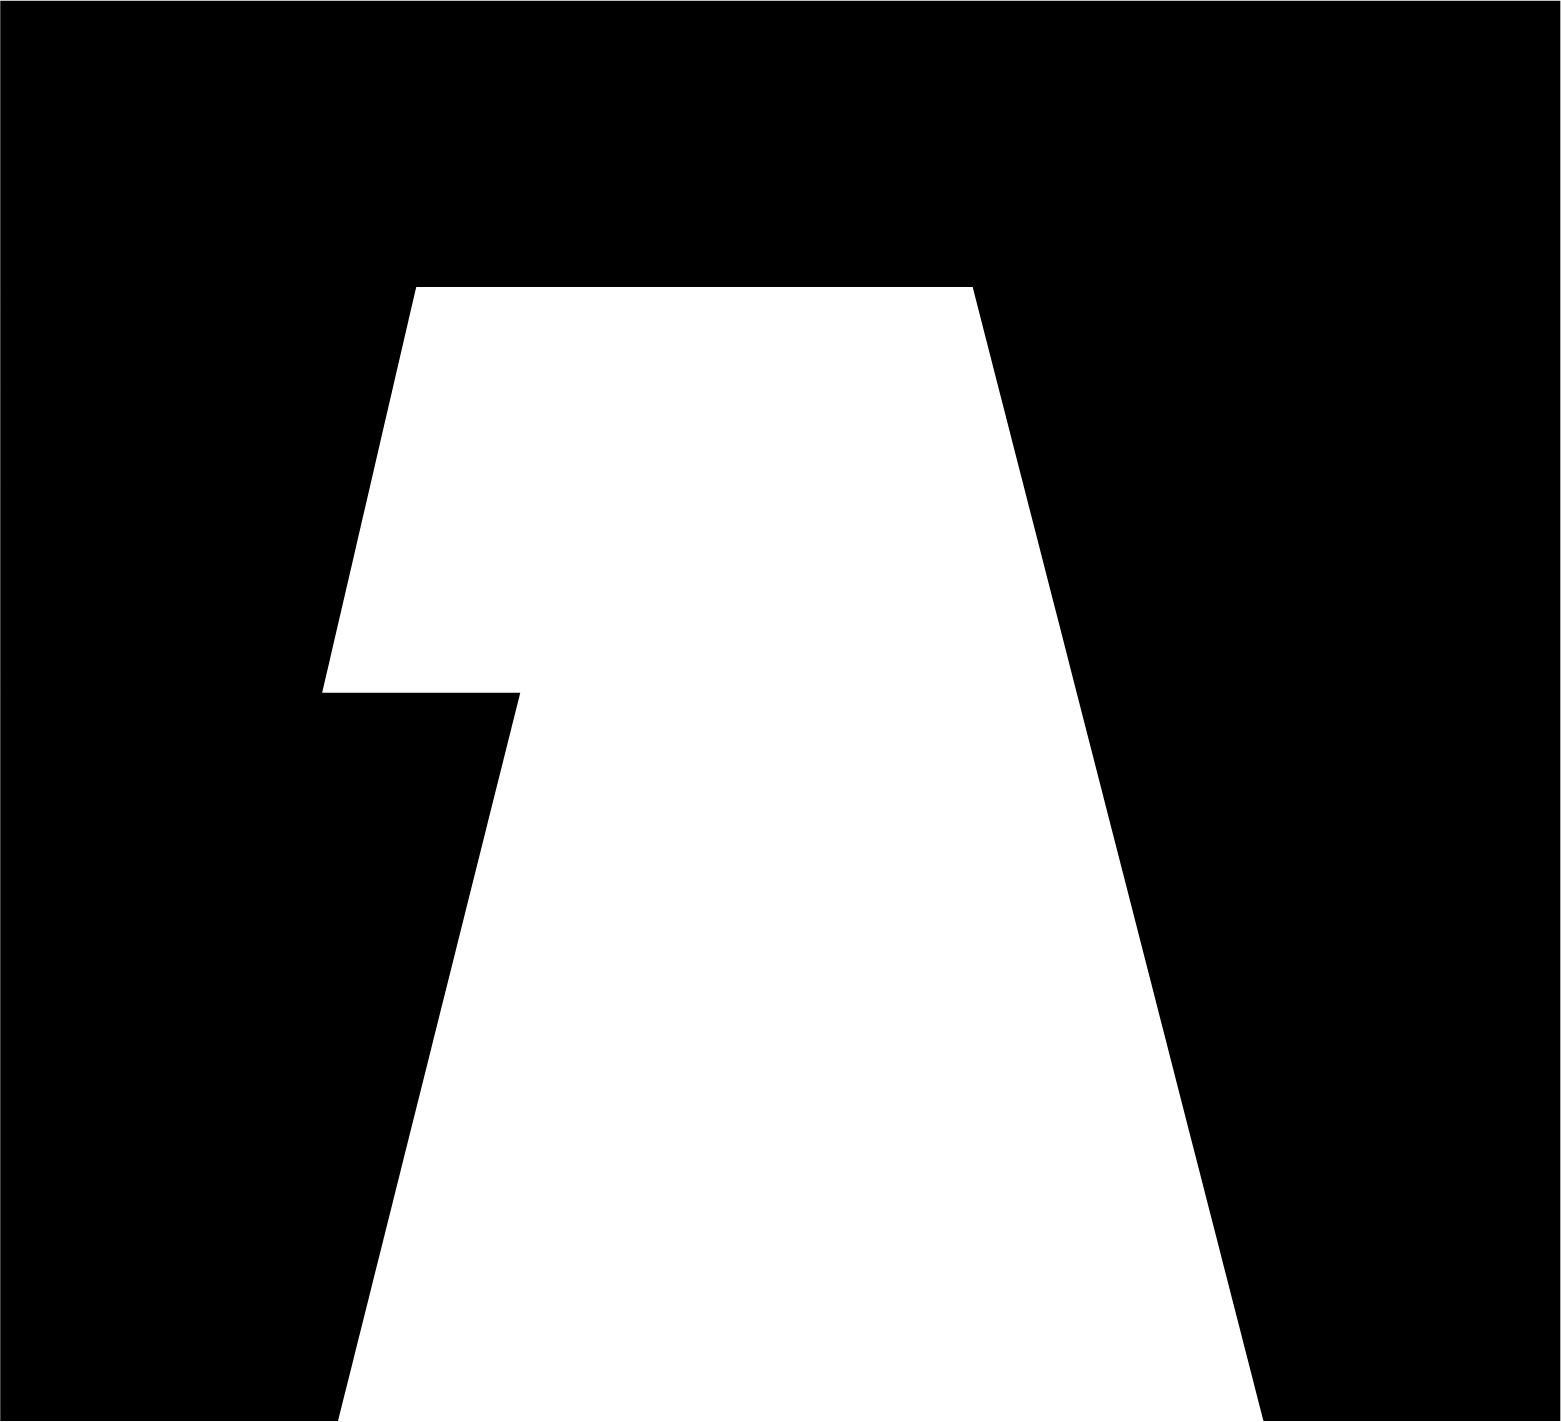 Adler Group logo (PNG transparent)